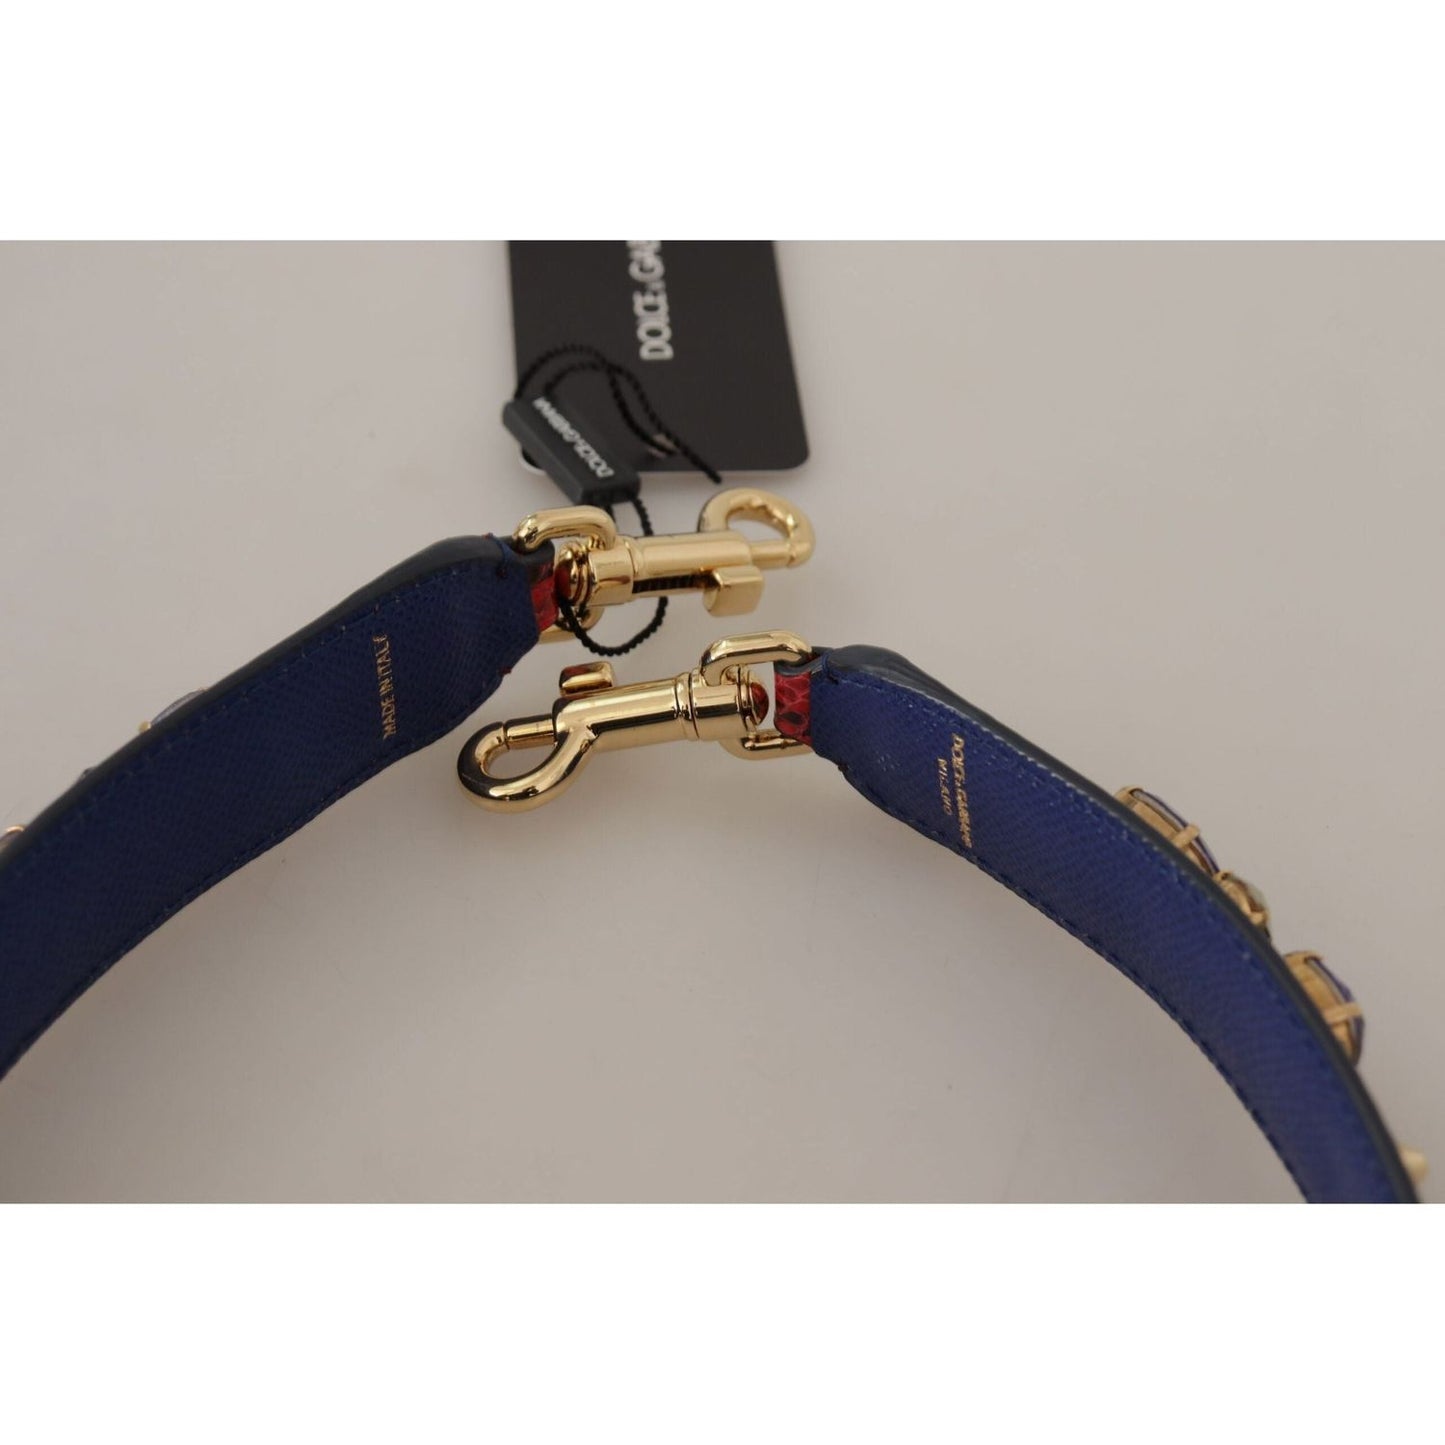 Dolce & Gabbana Elegant Red Python Leather Handbag Strap red-exotic-leather-crystals-bag-shoulder-strap-1 IMG_9688-1-scaled-942d6a95-e8e.jpg